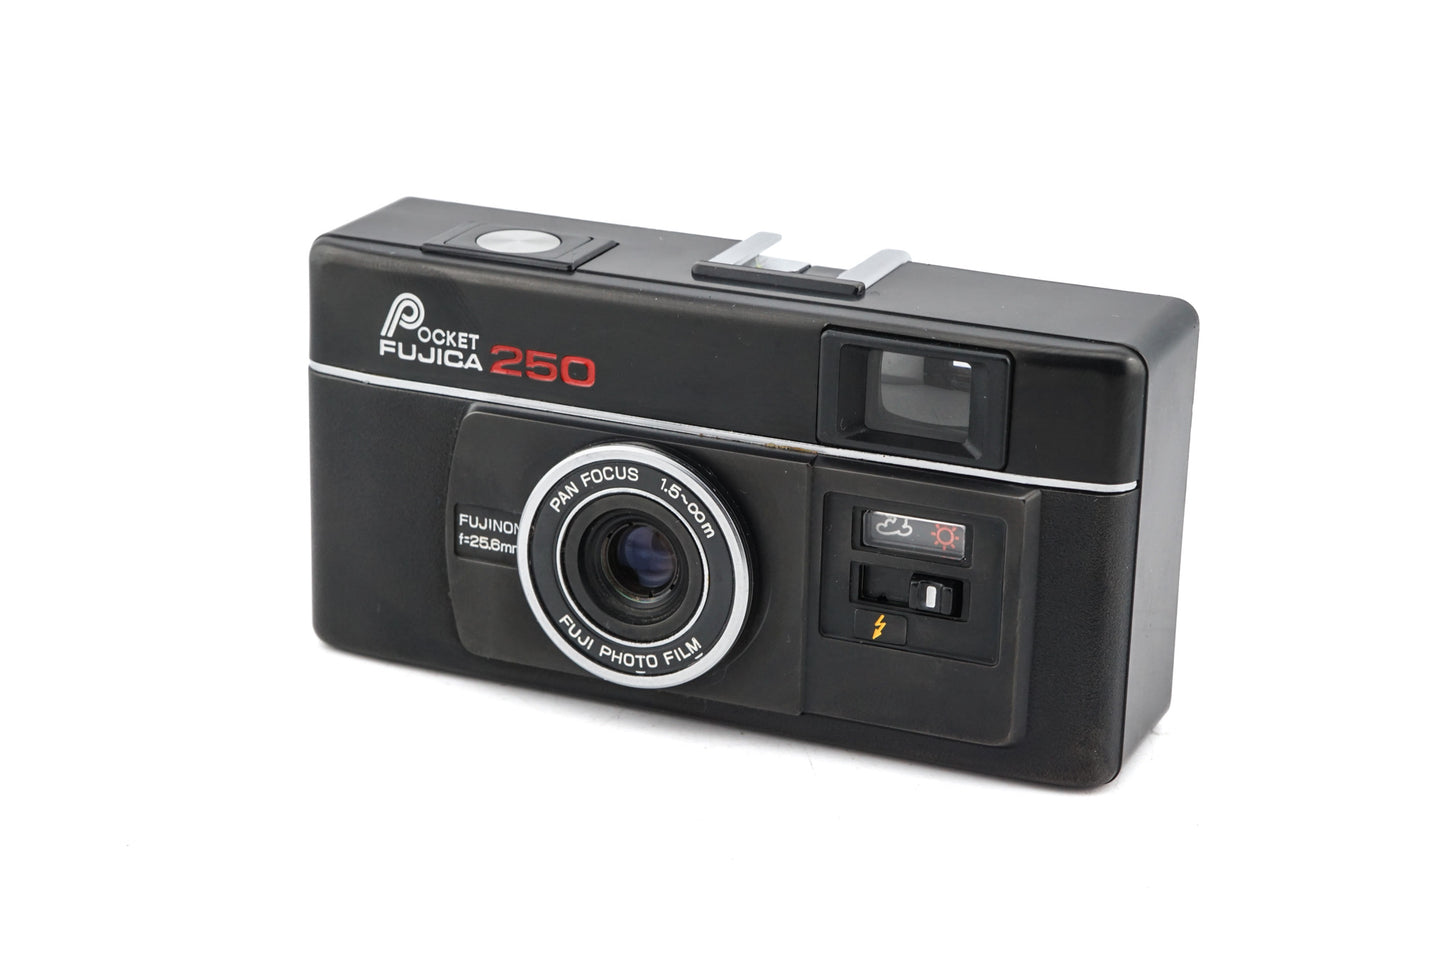 Fujica Pocket 250